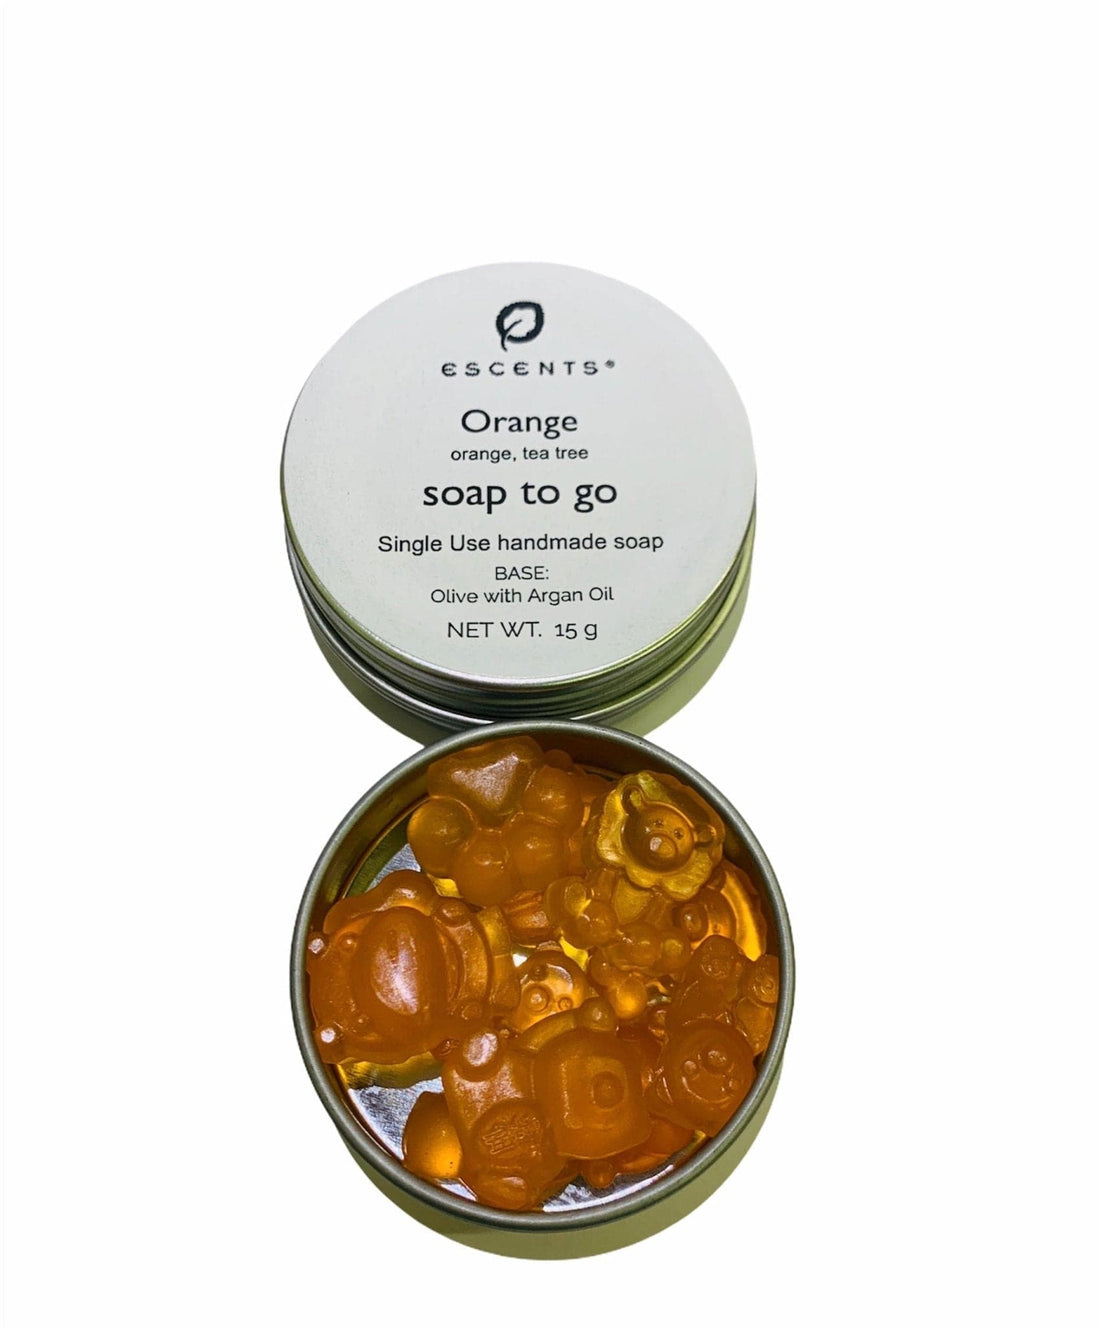 Soap to go Orange w/ Tea Tree (Pocket Soap/Single Use Soap) - Escents